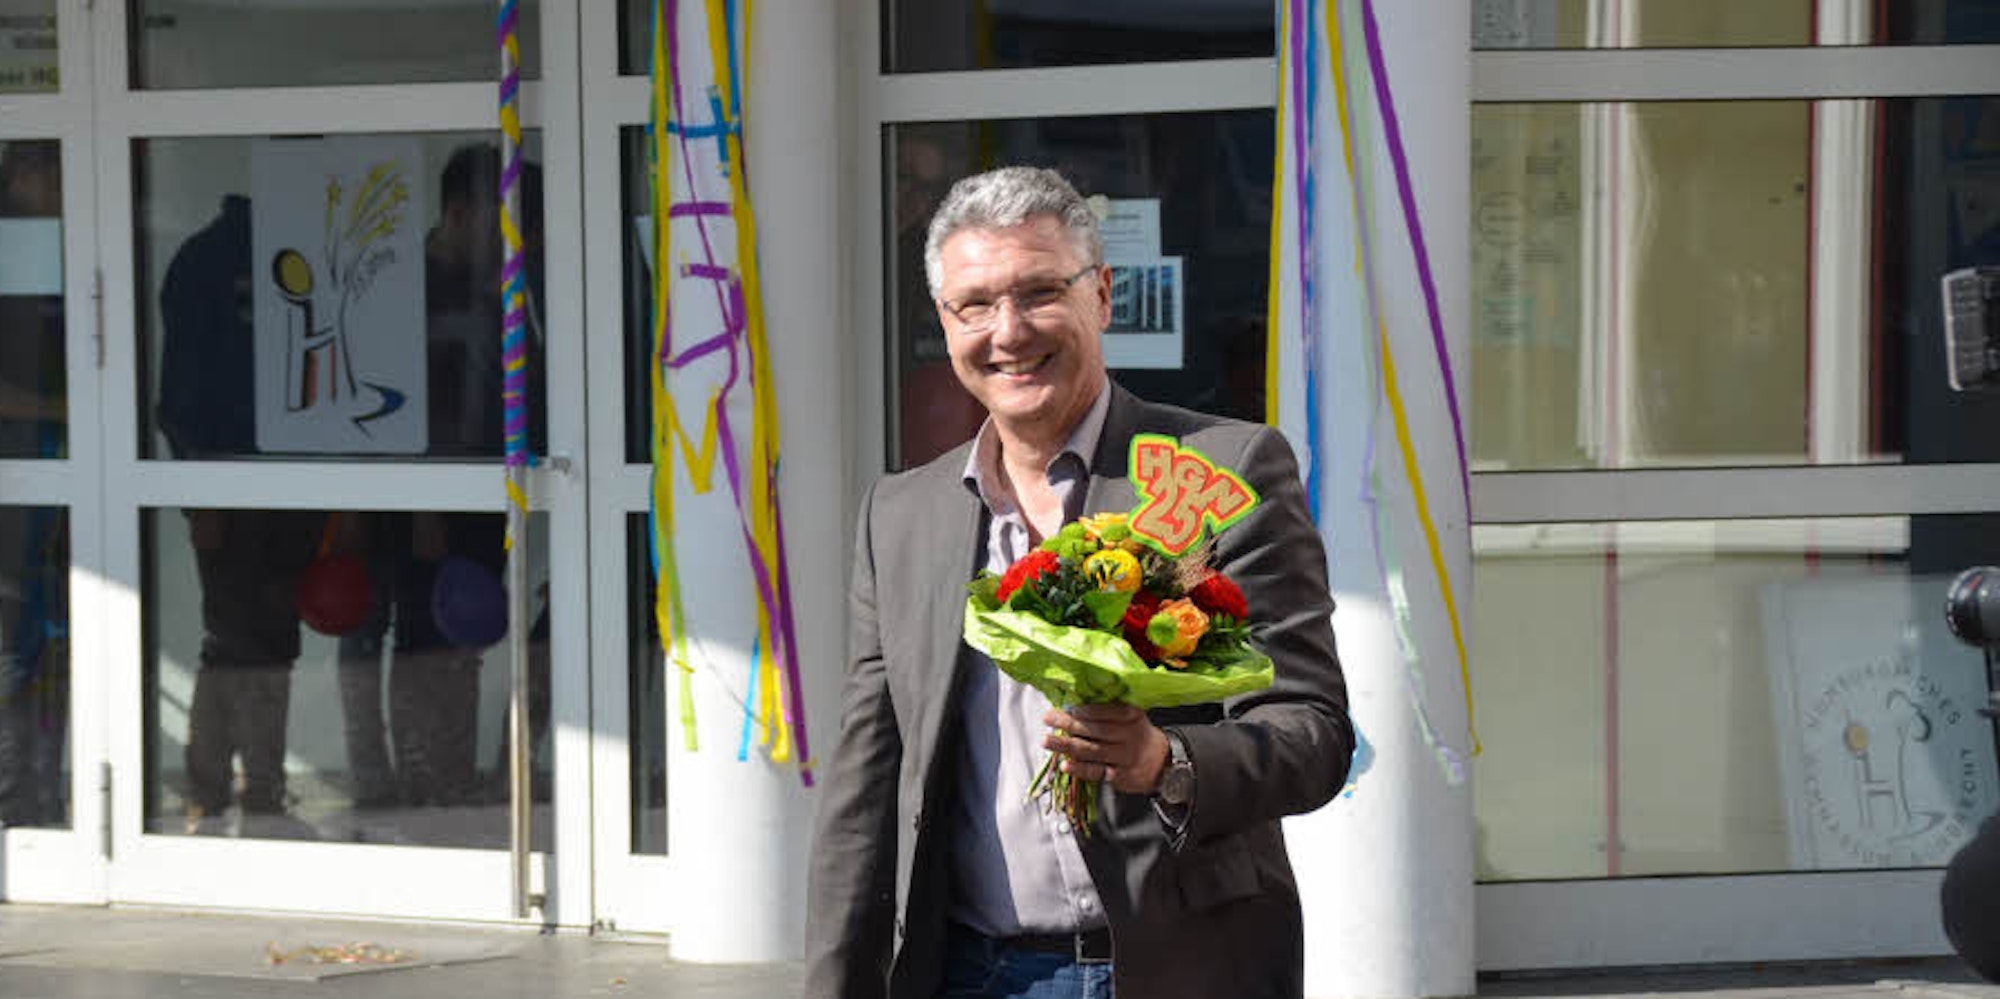 Thorgai Wilmsmann ist seit 2008 Leiter des Homburgischen Gymnasium. (Archivbild)